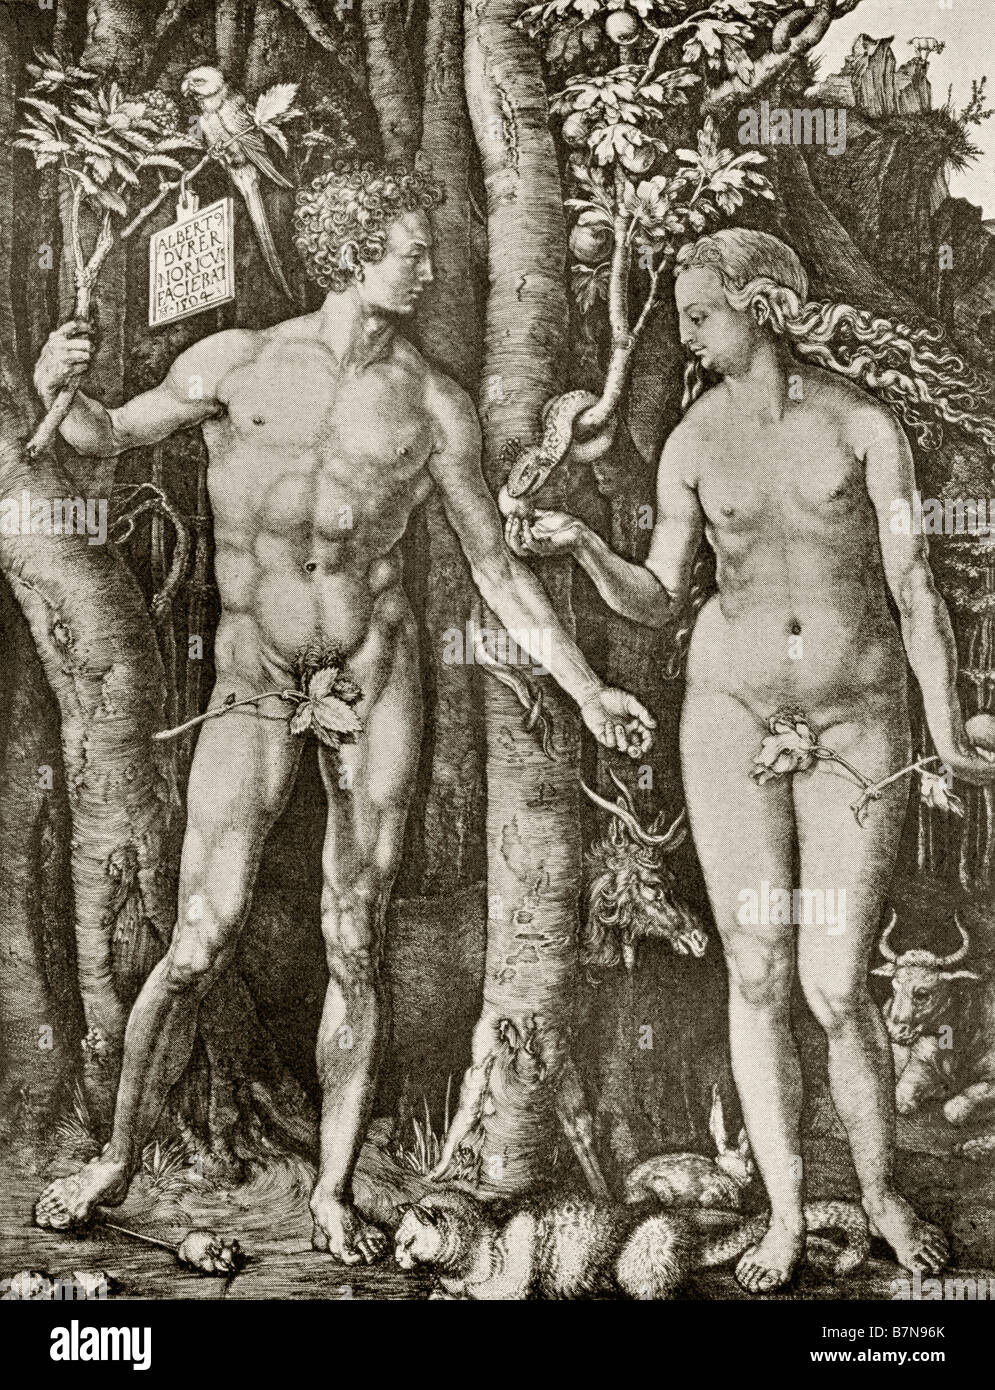 Adamo ed Eva. Dall'incisione di linea di Albrecht Durer, 1504. Foto Stock